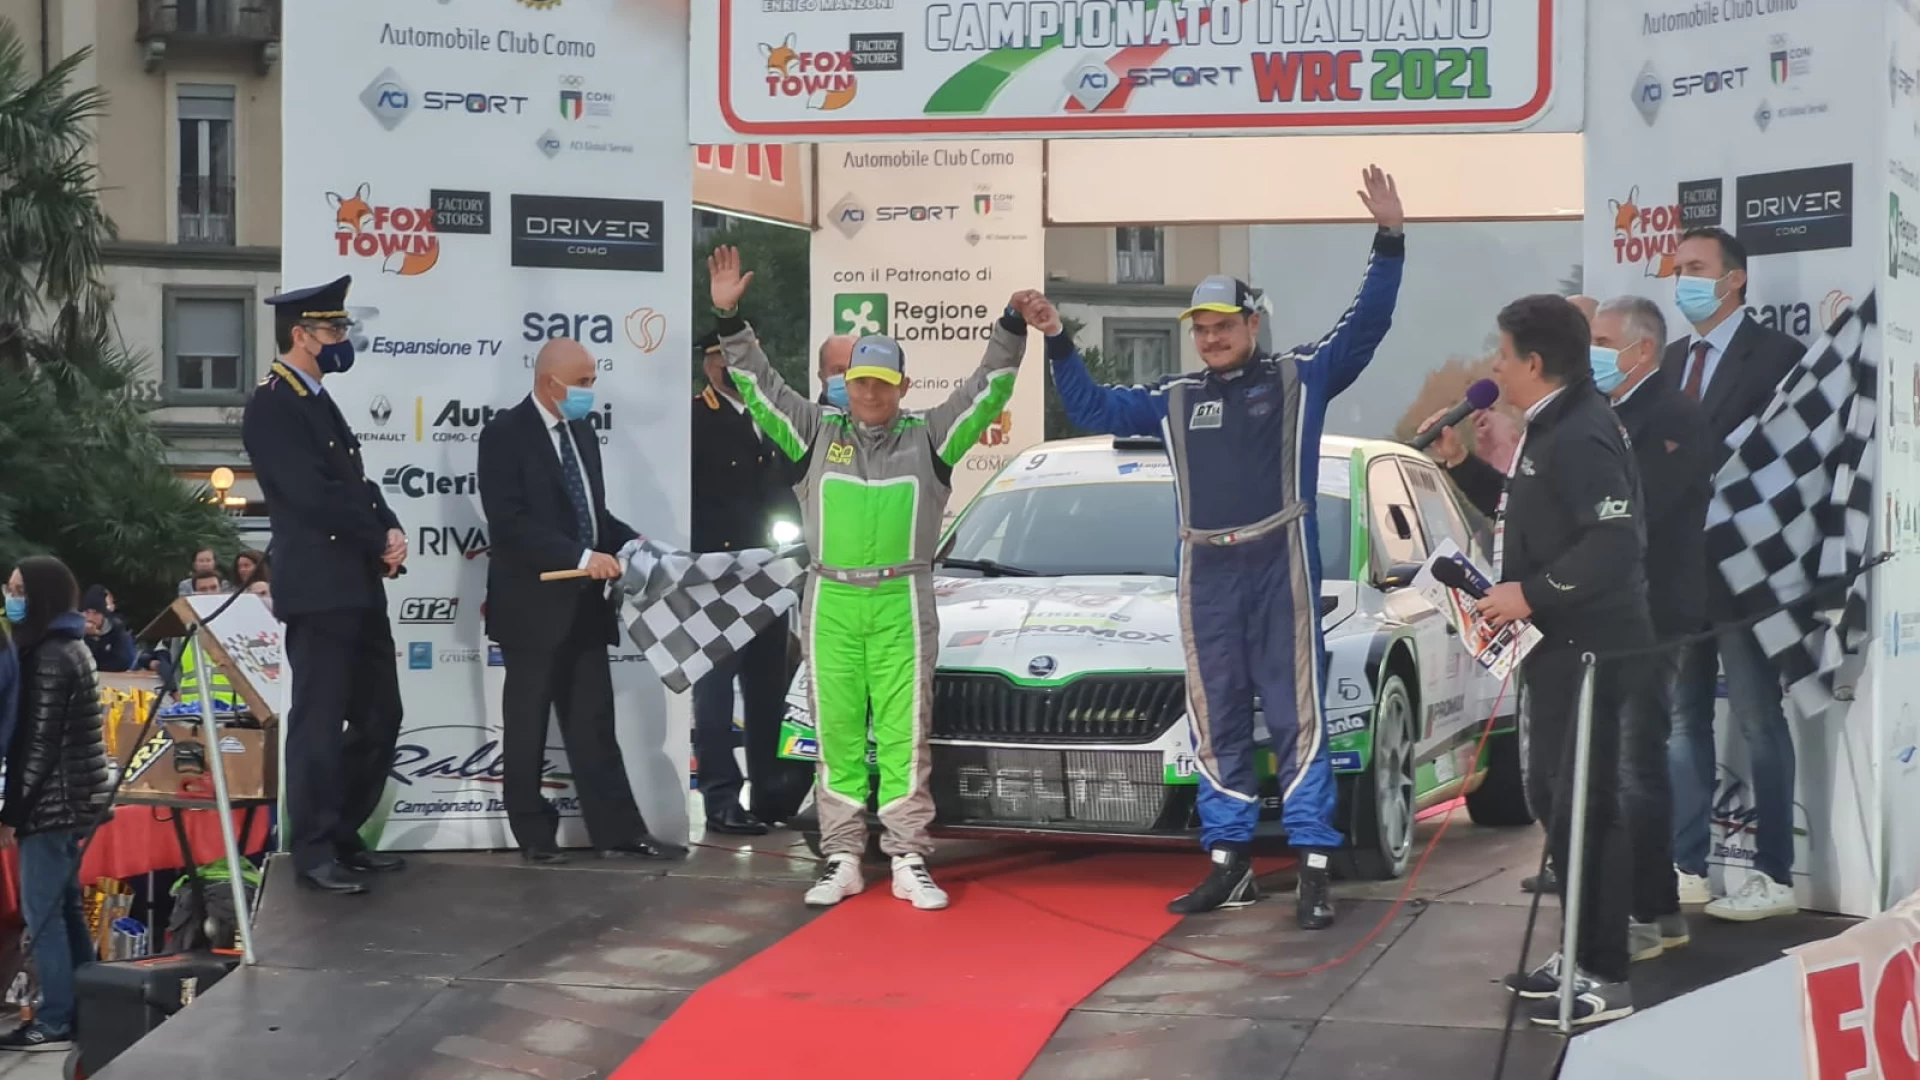 Giuseppe Testa conquista il terzo posto assoluto al Rally di Como. La gara conclude il CI WRC.